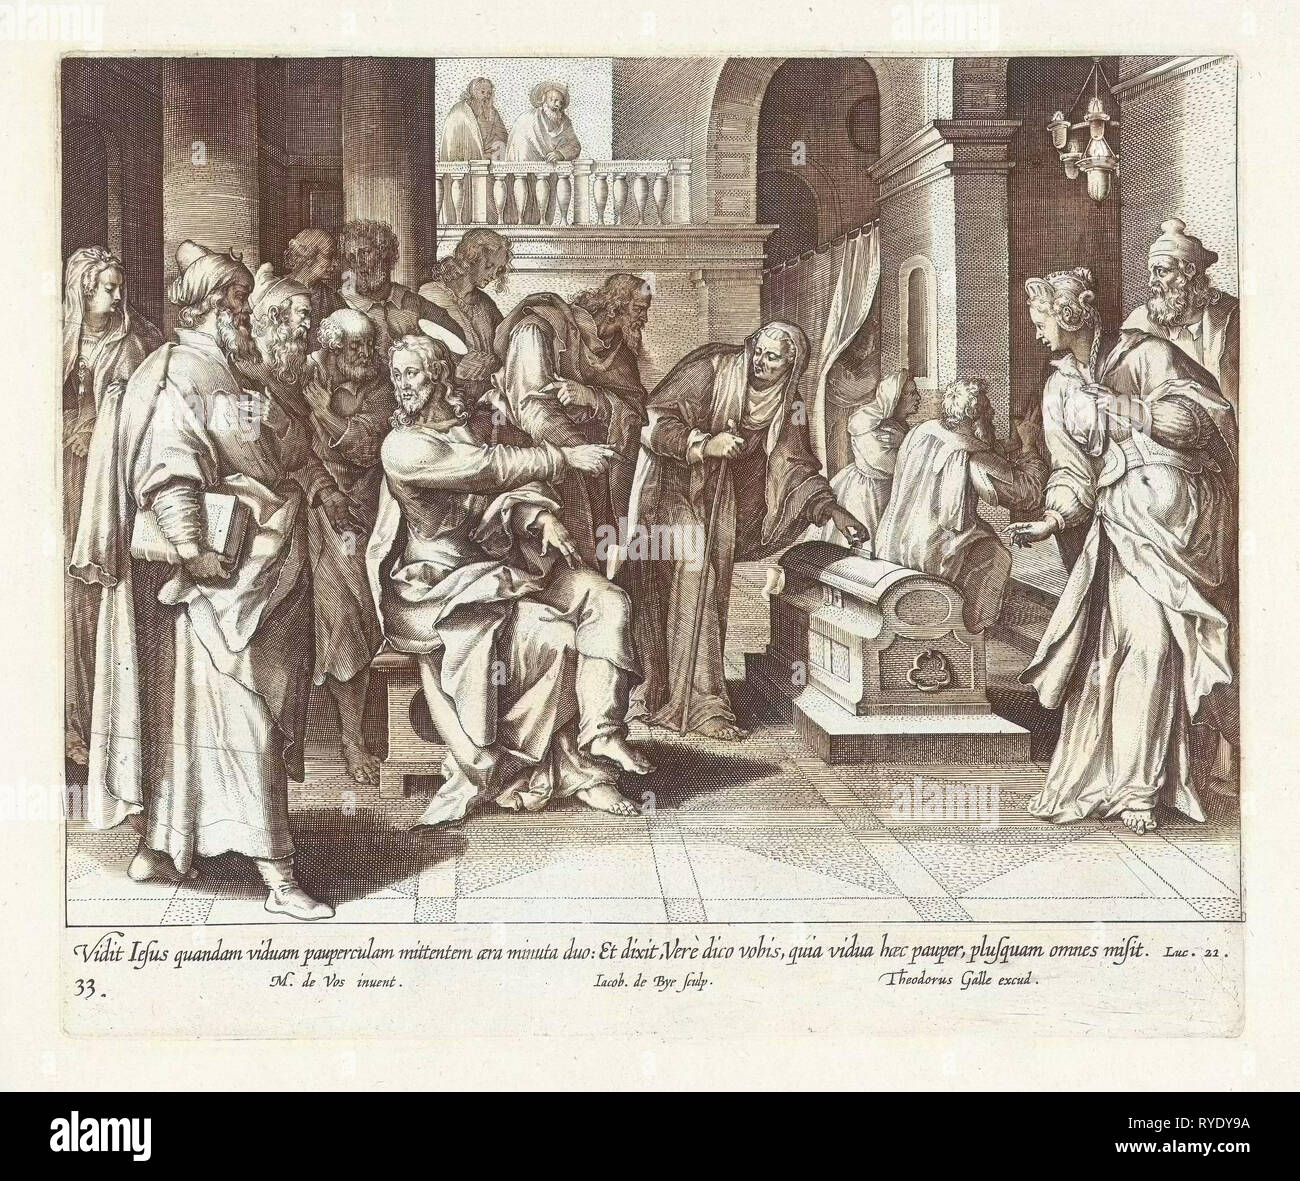 Generosity of the poor widow, Jacques de Bie, Theodoor Galle, 1598 - 1618  Stock Photo - Alamy